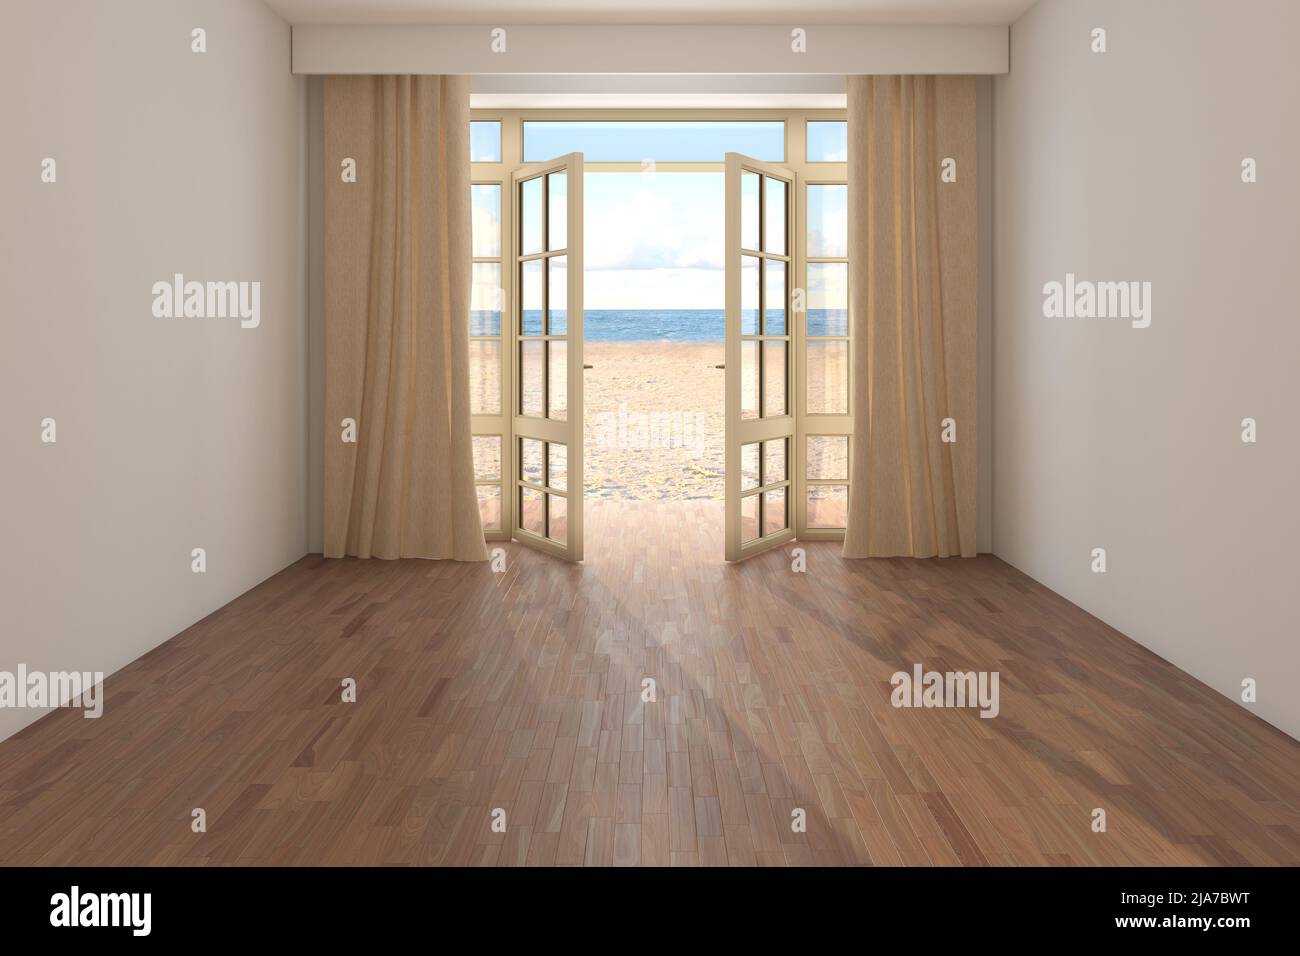 Chambre d'hôtel vide avec vue sur la mer. Intérieur avec porte ouverte donnant sur l'océan, rideaux beige, sable jaune et nuages. Parquet sombre et mur en stuc blanc. Rendu 3D, 8K Ultra HD, 7680 x 5121 Banque D'Images